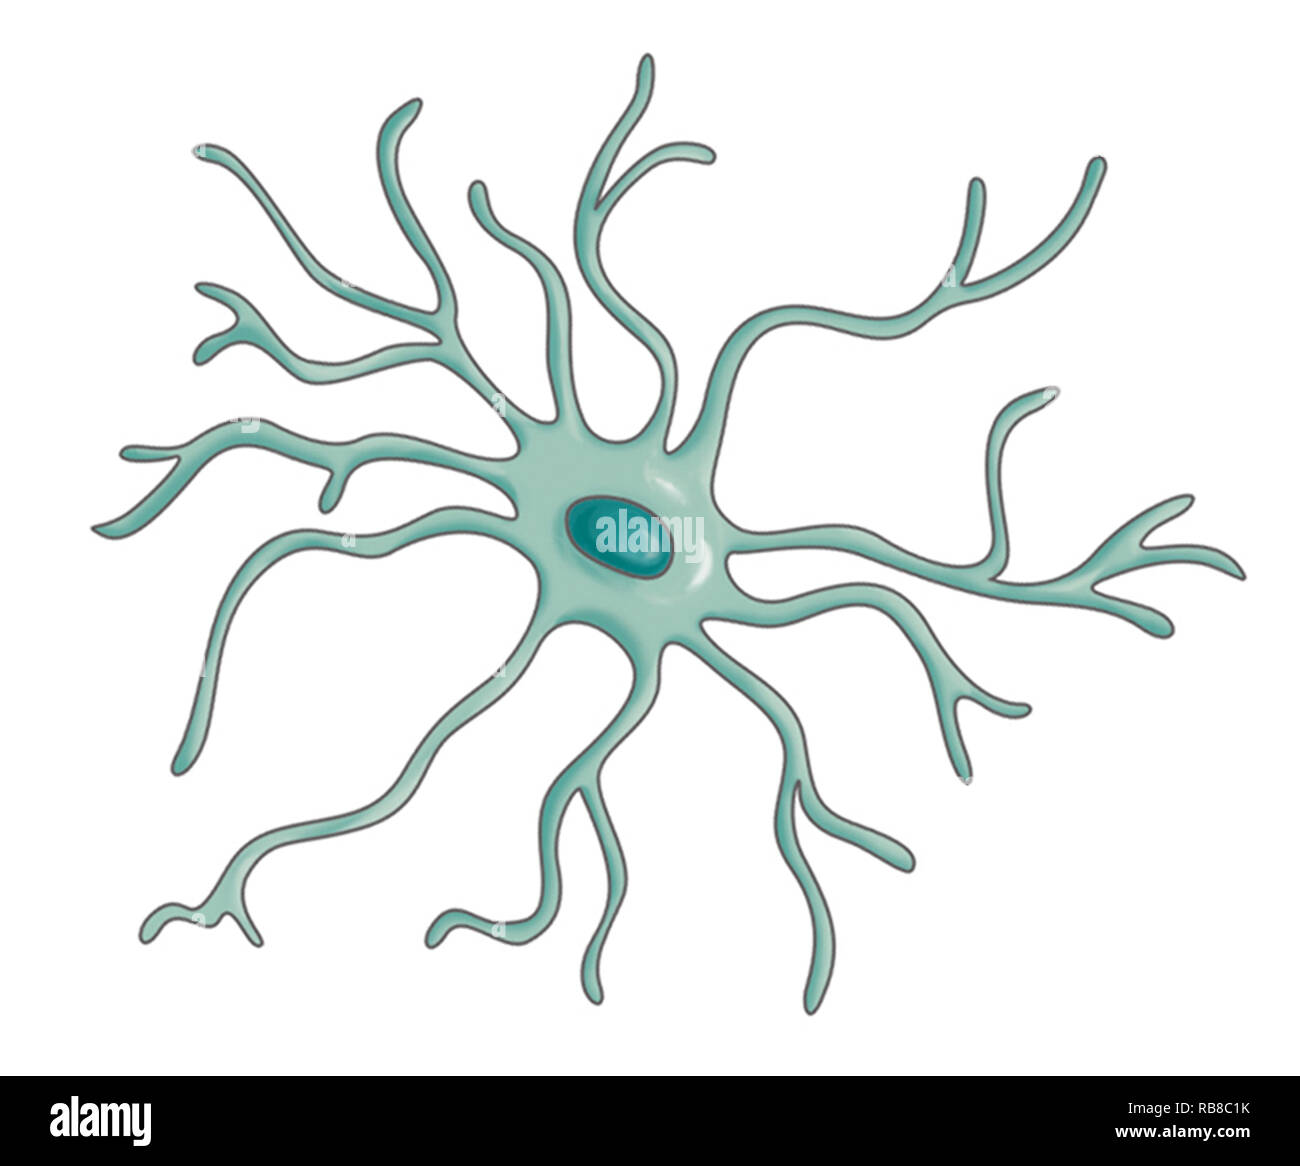 Una neurona en dibujo